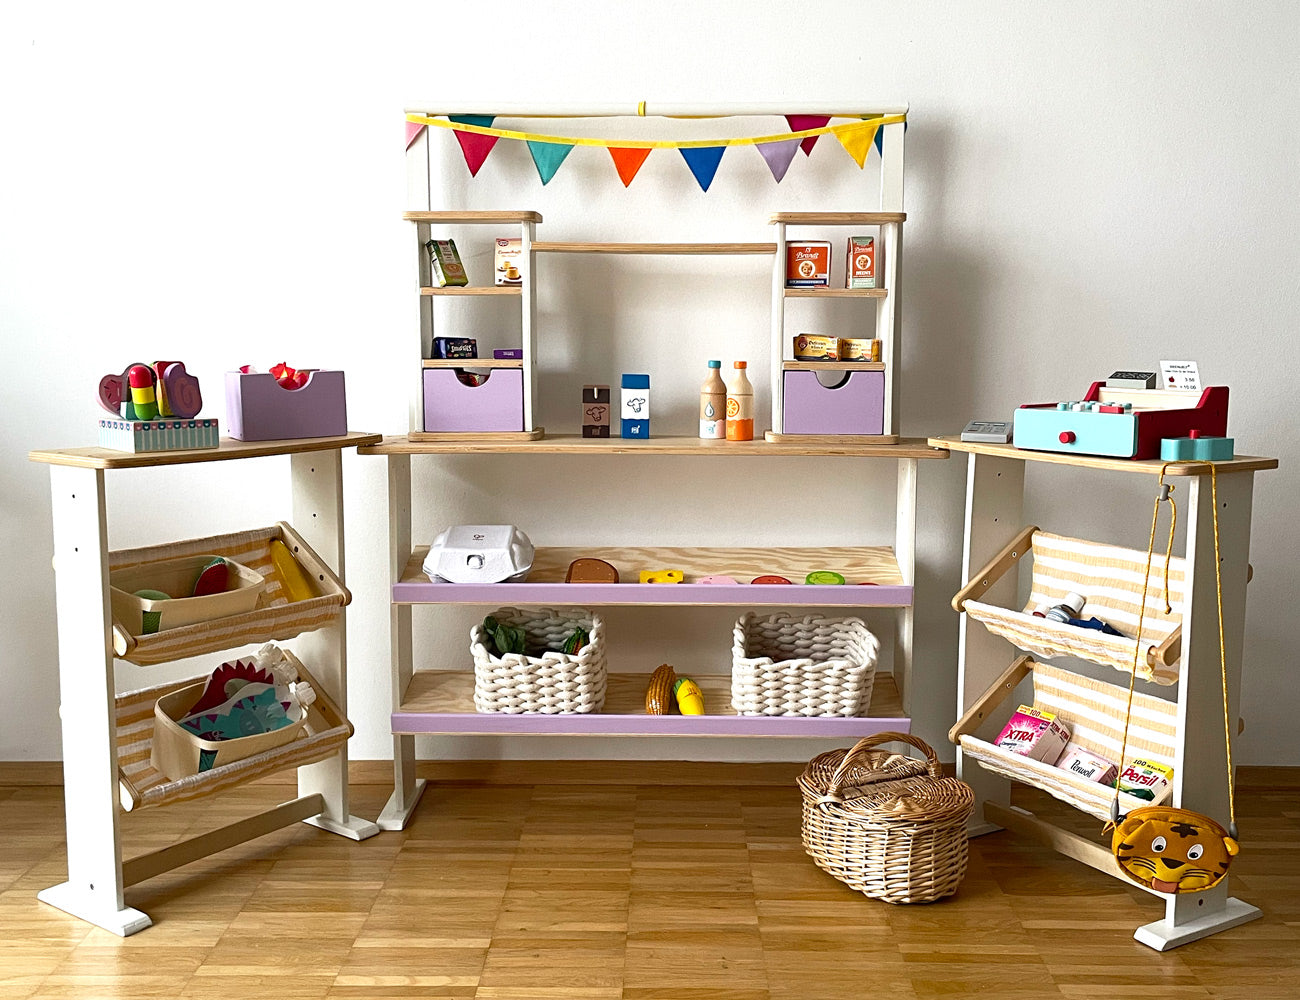 Upcycling Ideen Deko: Kinderzimmer mit DIY-Ideen und Farben aufpeppen